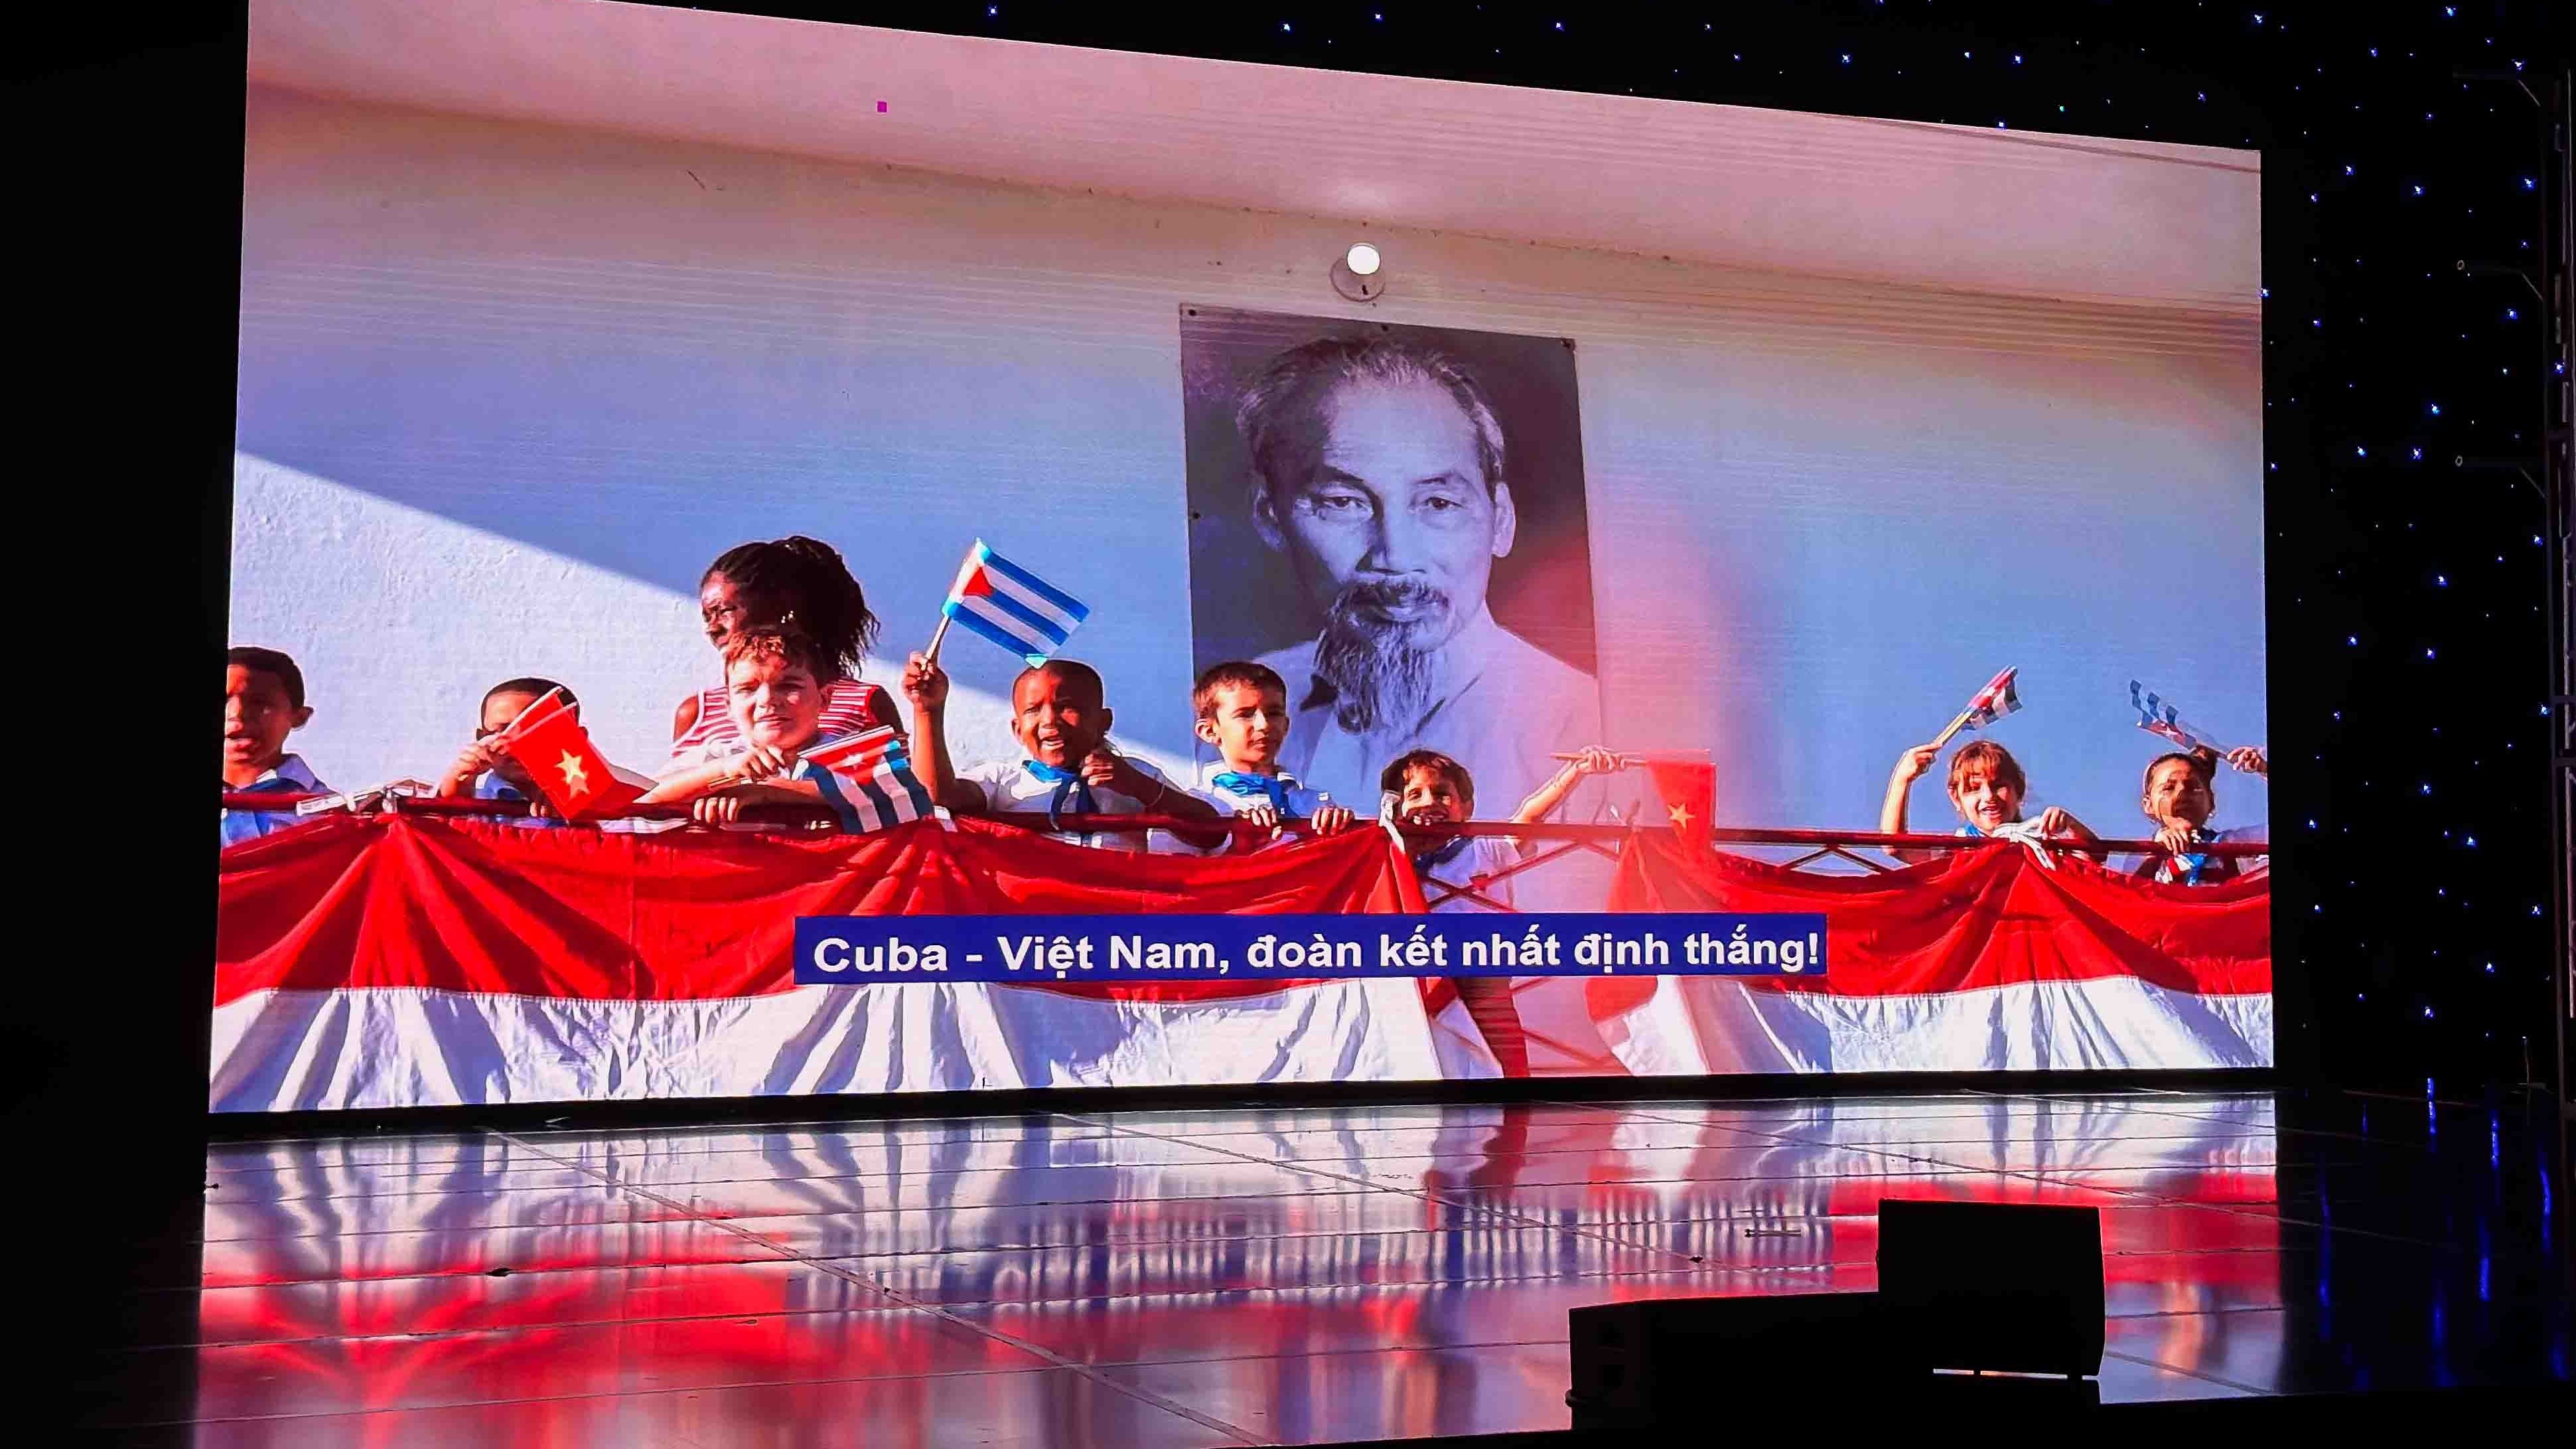 Việt Nam-Cuba: Hai trái tim chung nhịp đập